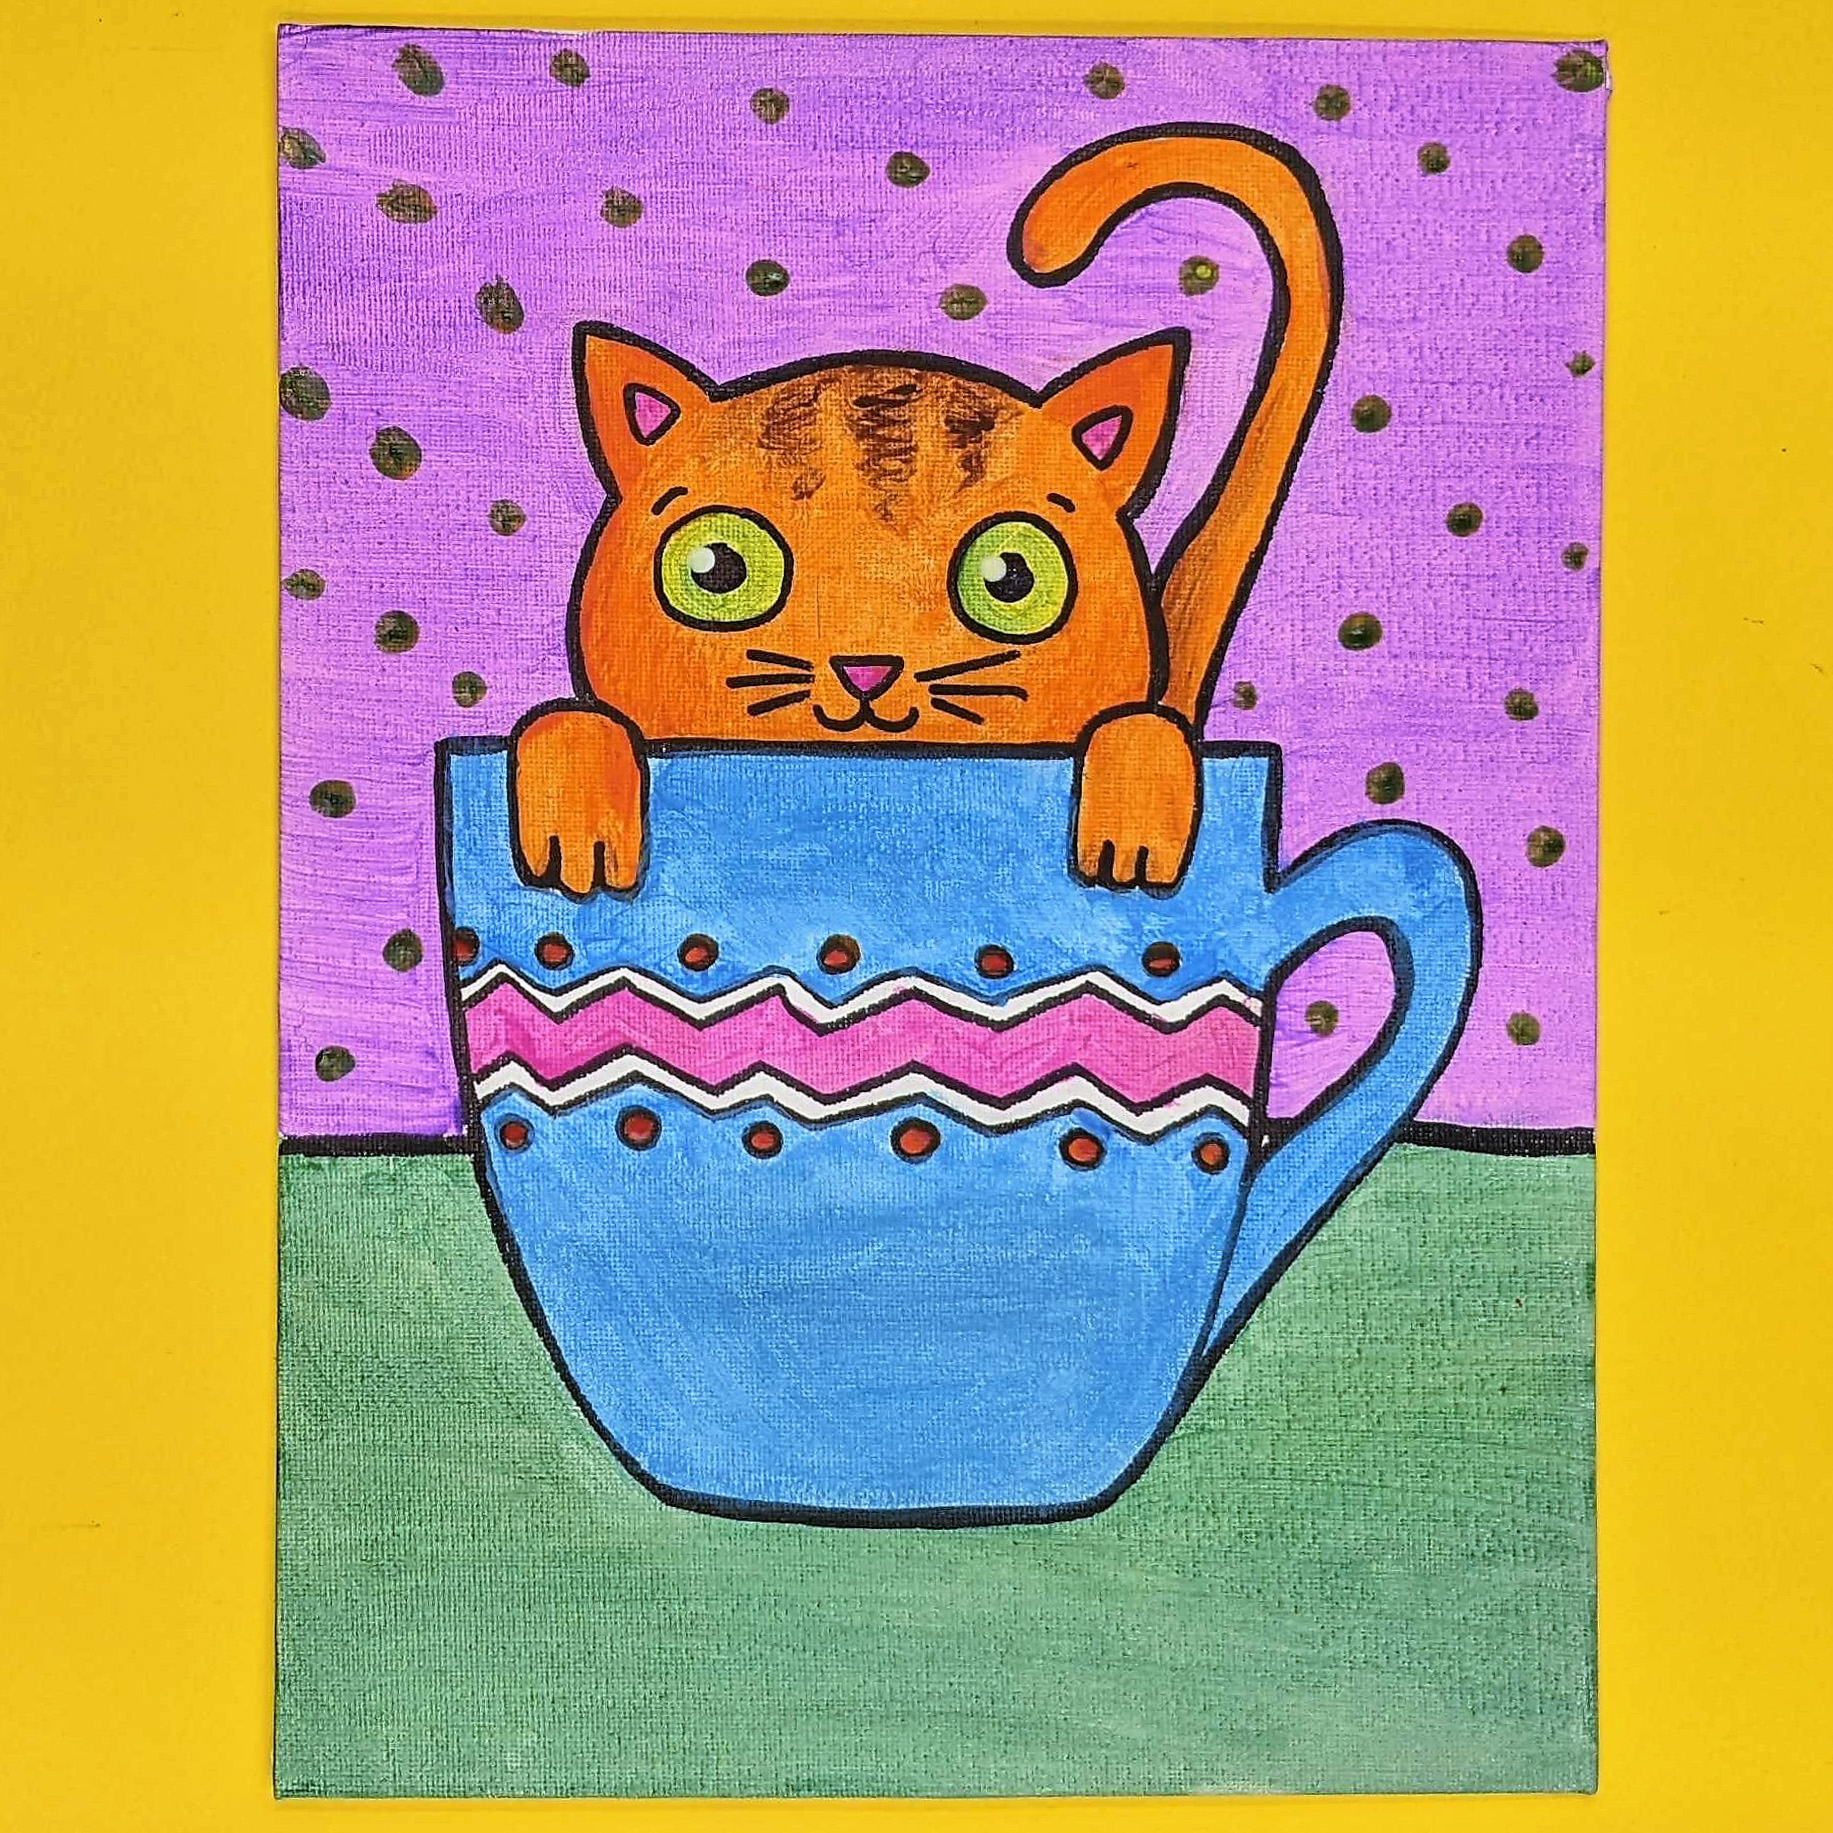 Kidcreate Studio - Bloomfield, Teacup Kitten Art Project